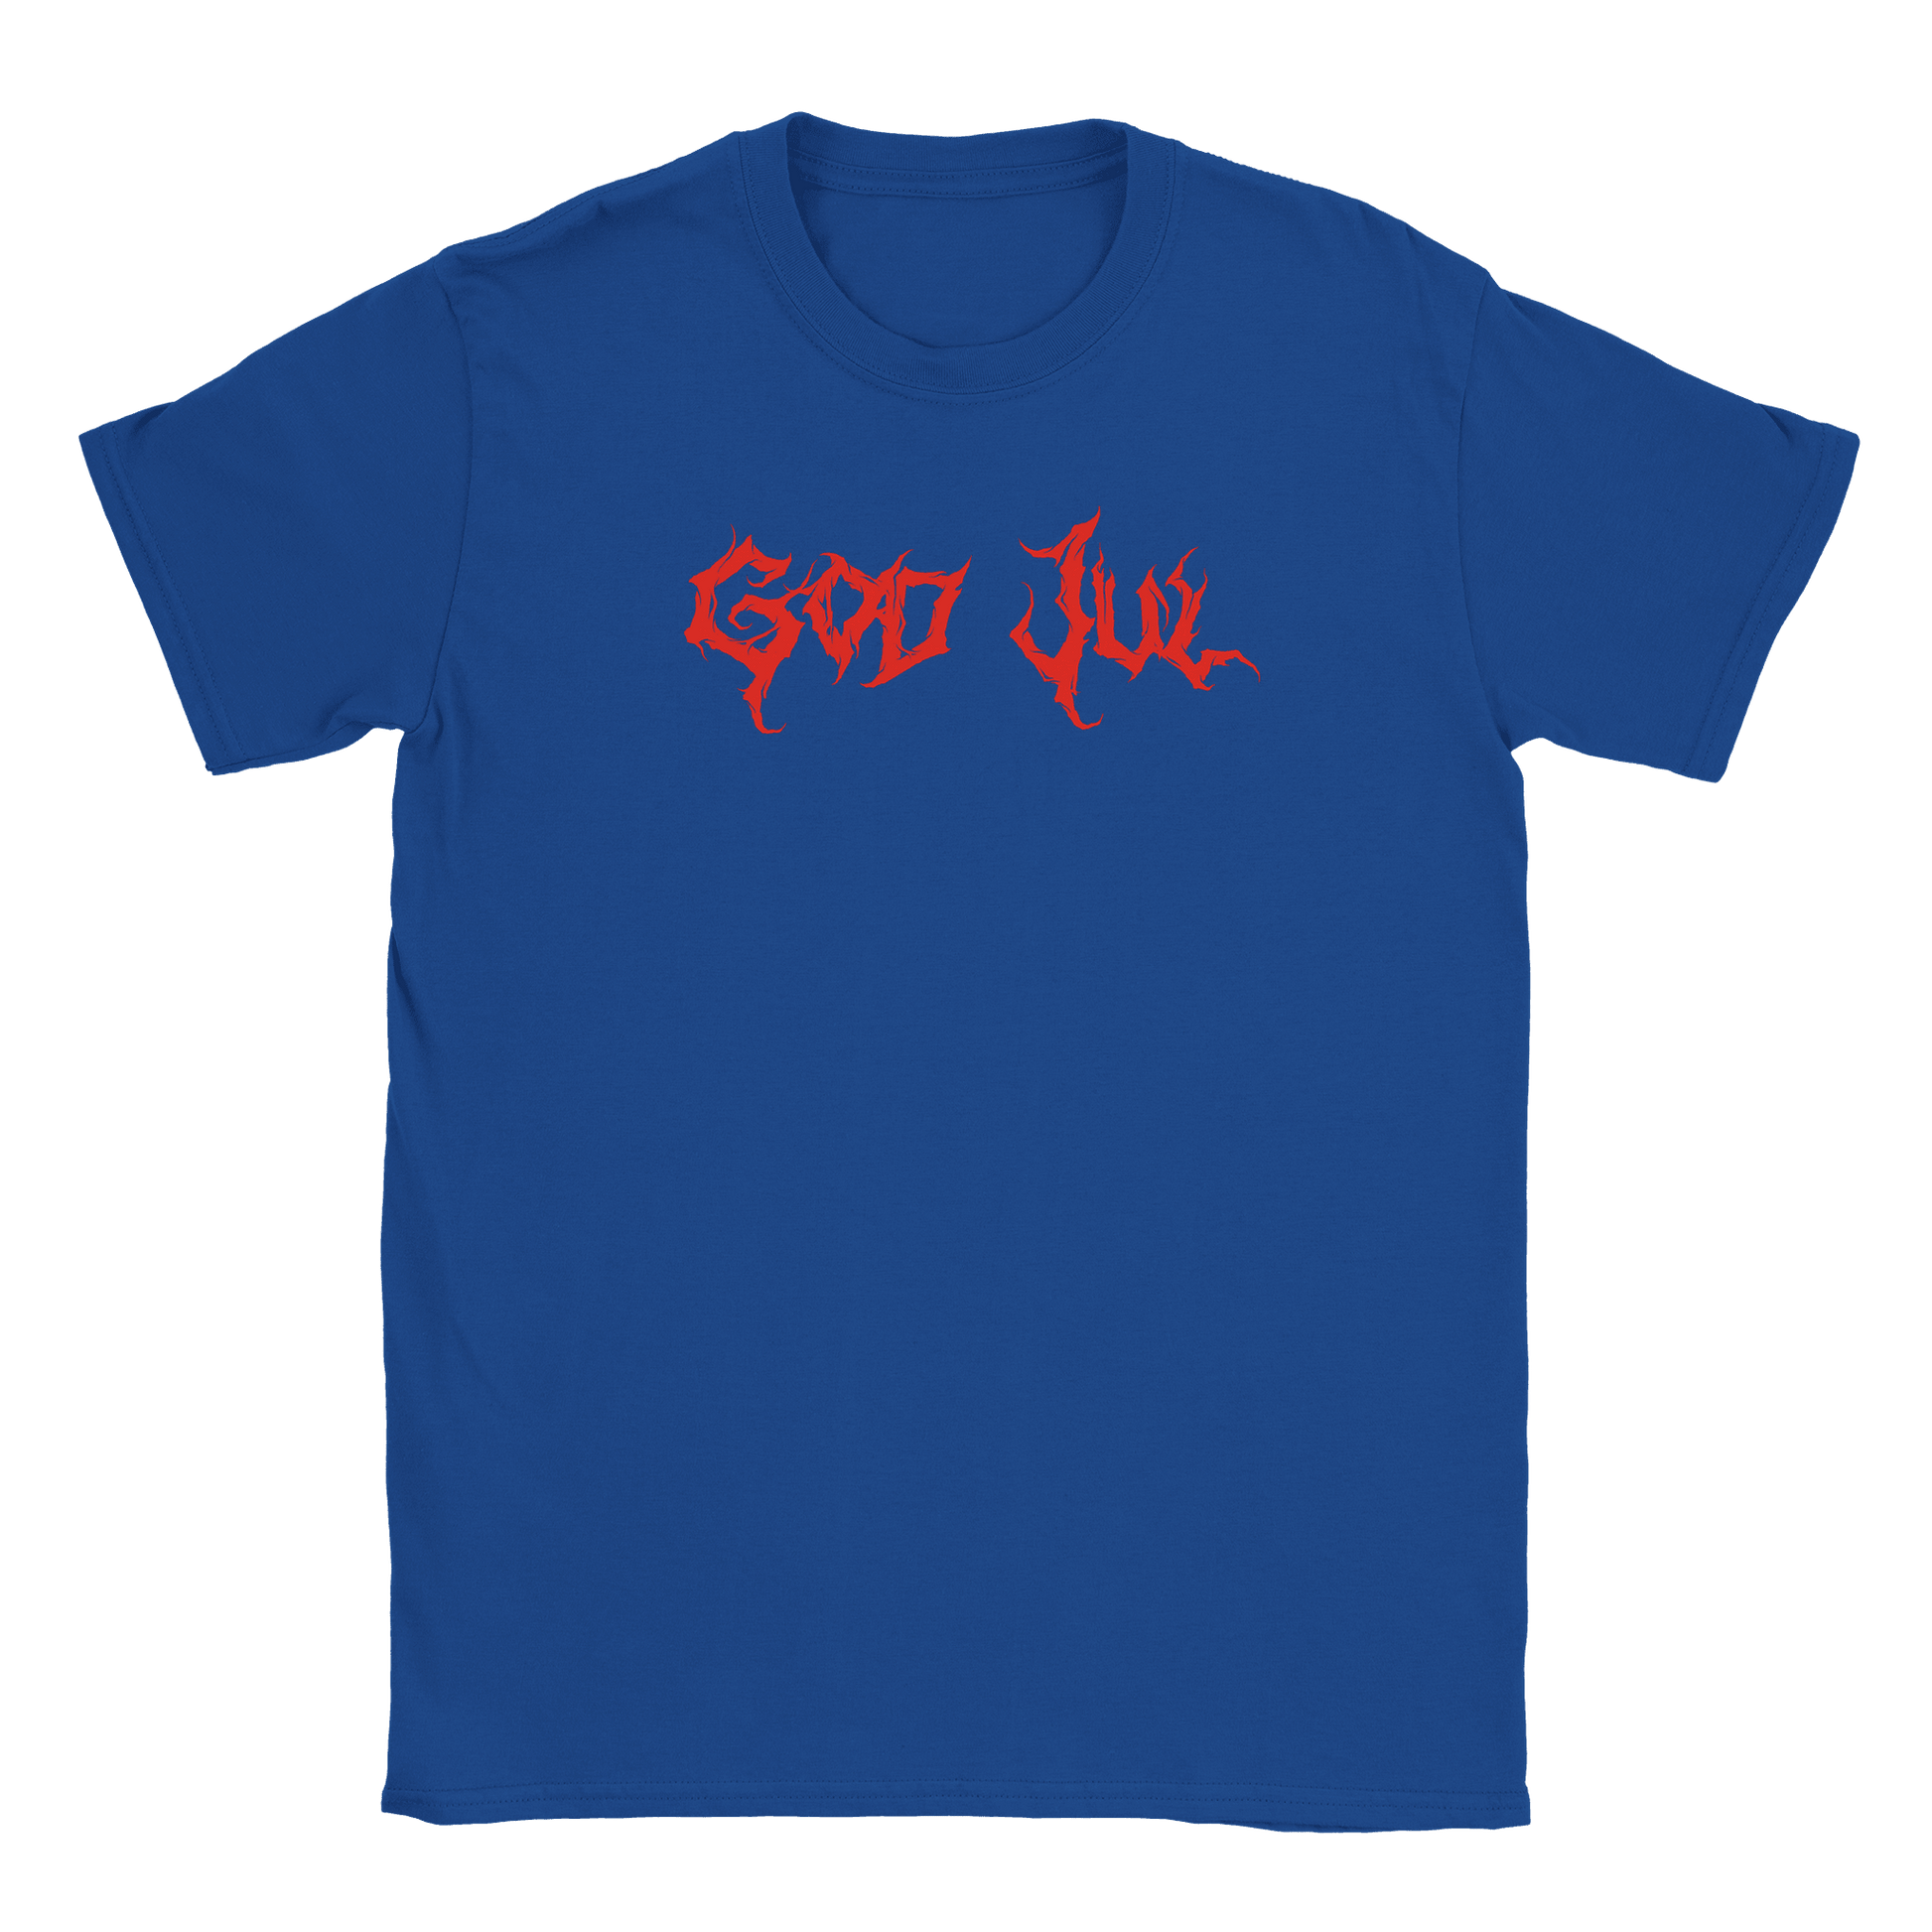 God Jul - T-shirt Blå